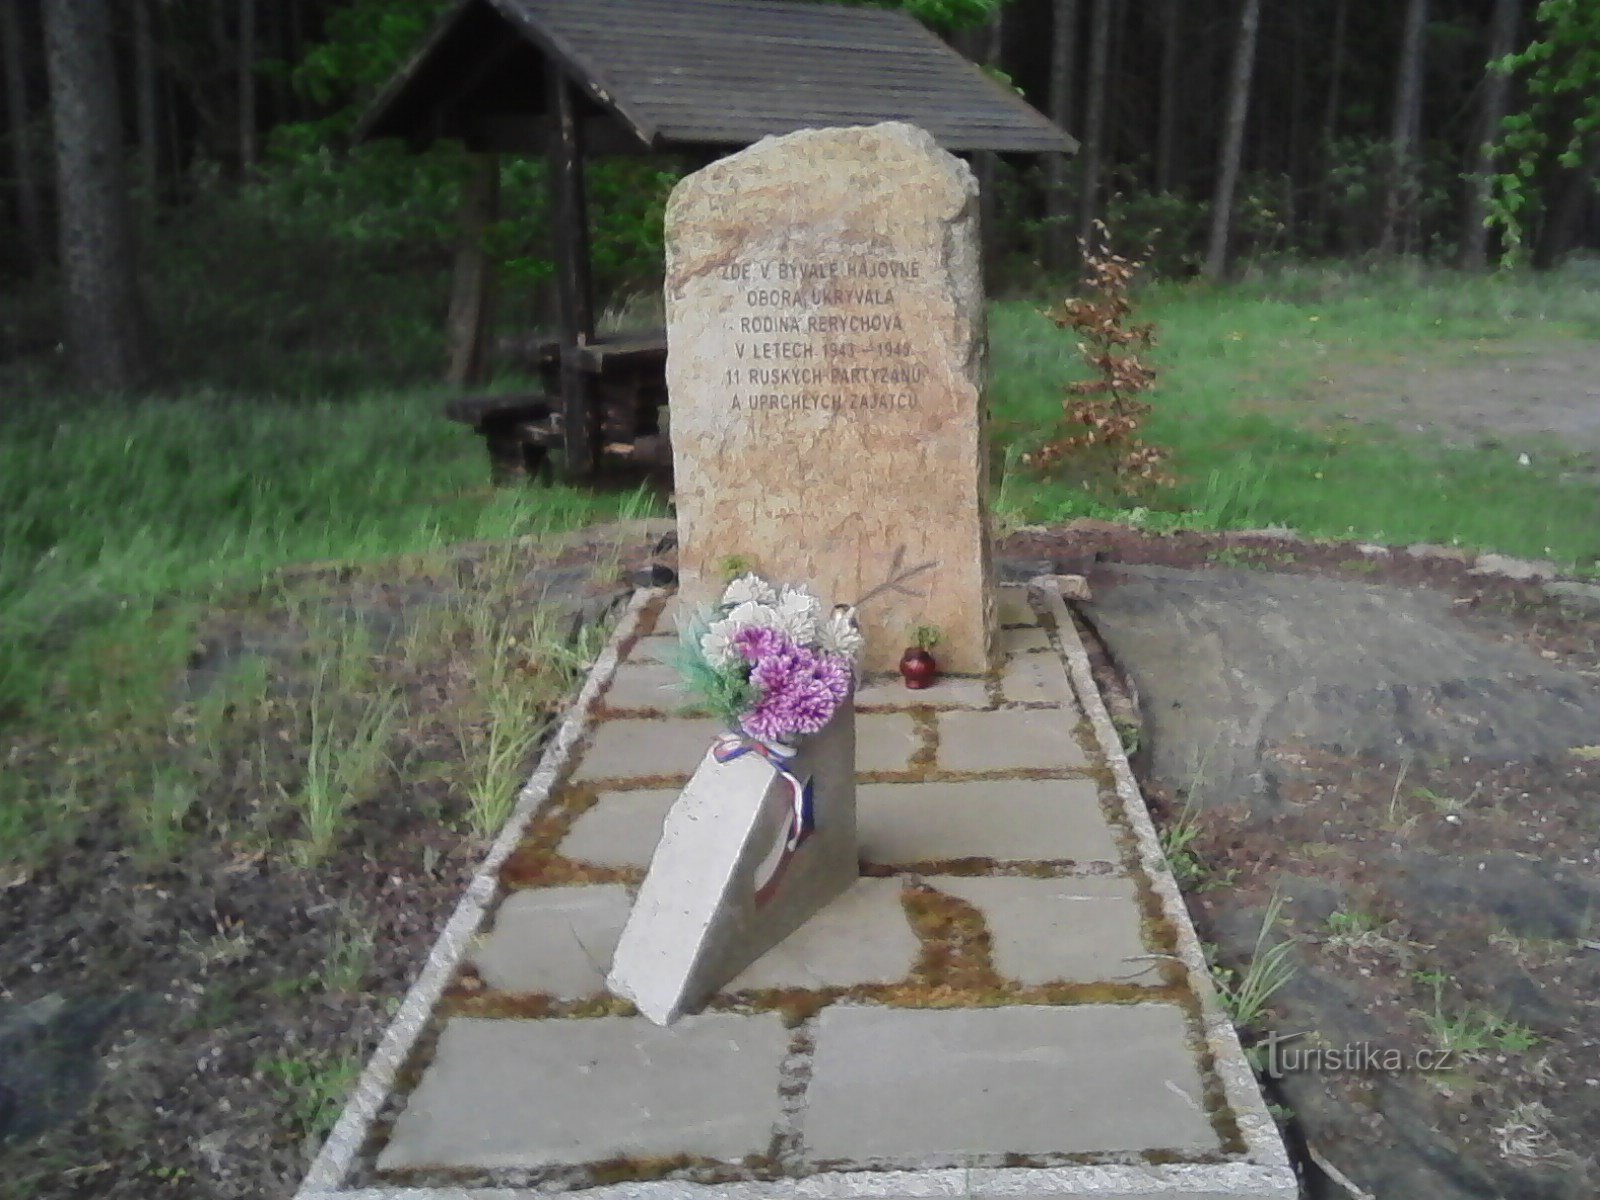 3. Monument voor de helden van de oorlog op het terrein van het voormalige Rerych Game Reserve.